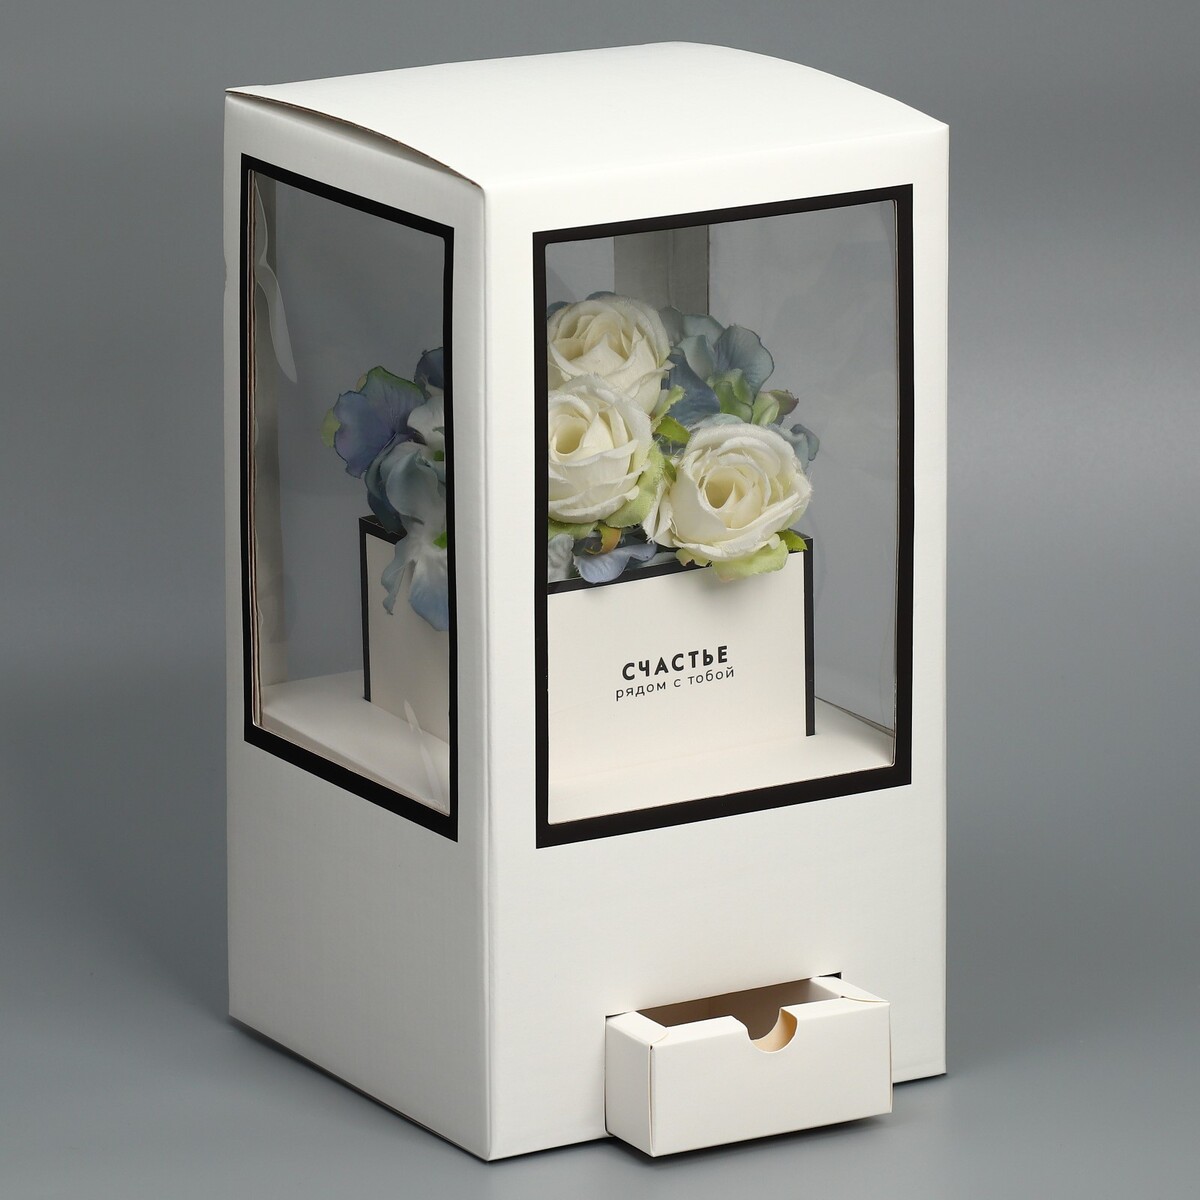 Коробка подарочная для цветов с вазой из мгк складная, упаковка, коробка для ов с вазой и pvc окнами складная розовый 23 х 30 х 23 см